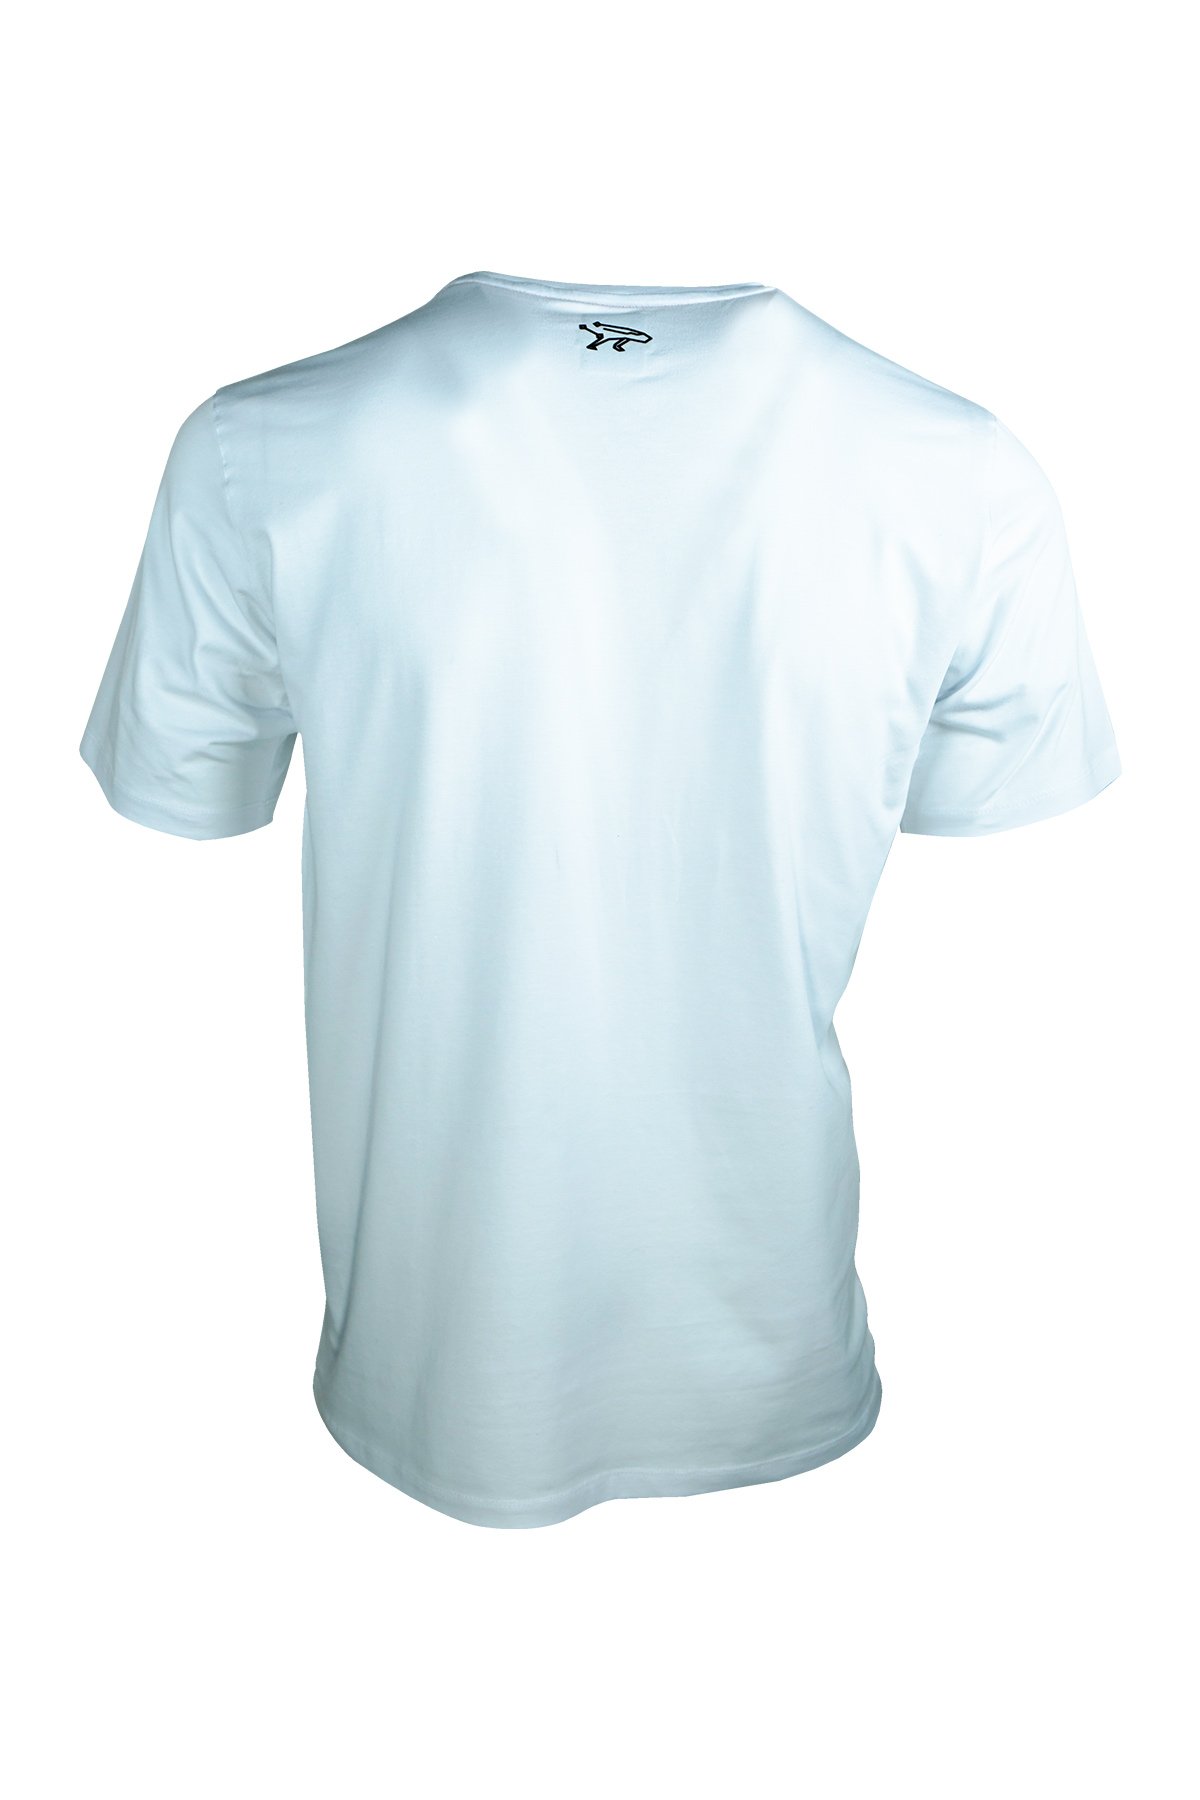 Casual Neo Organic T-Shirt BeSuperior